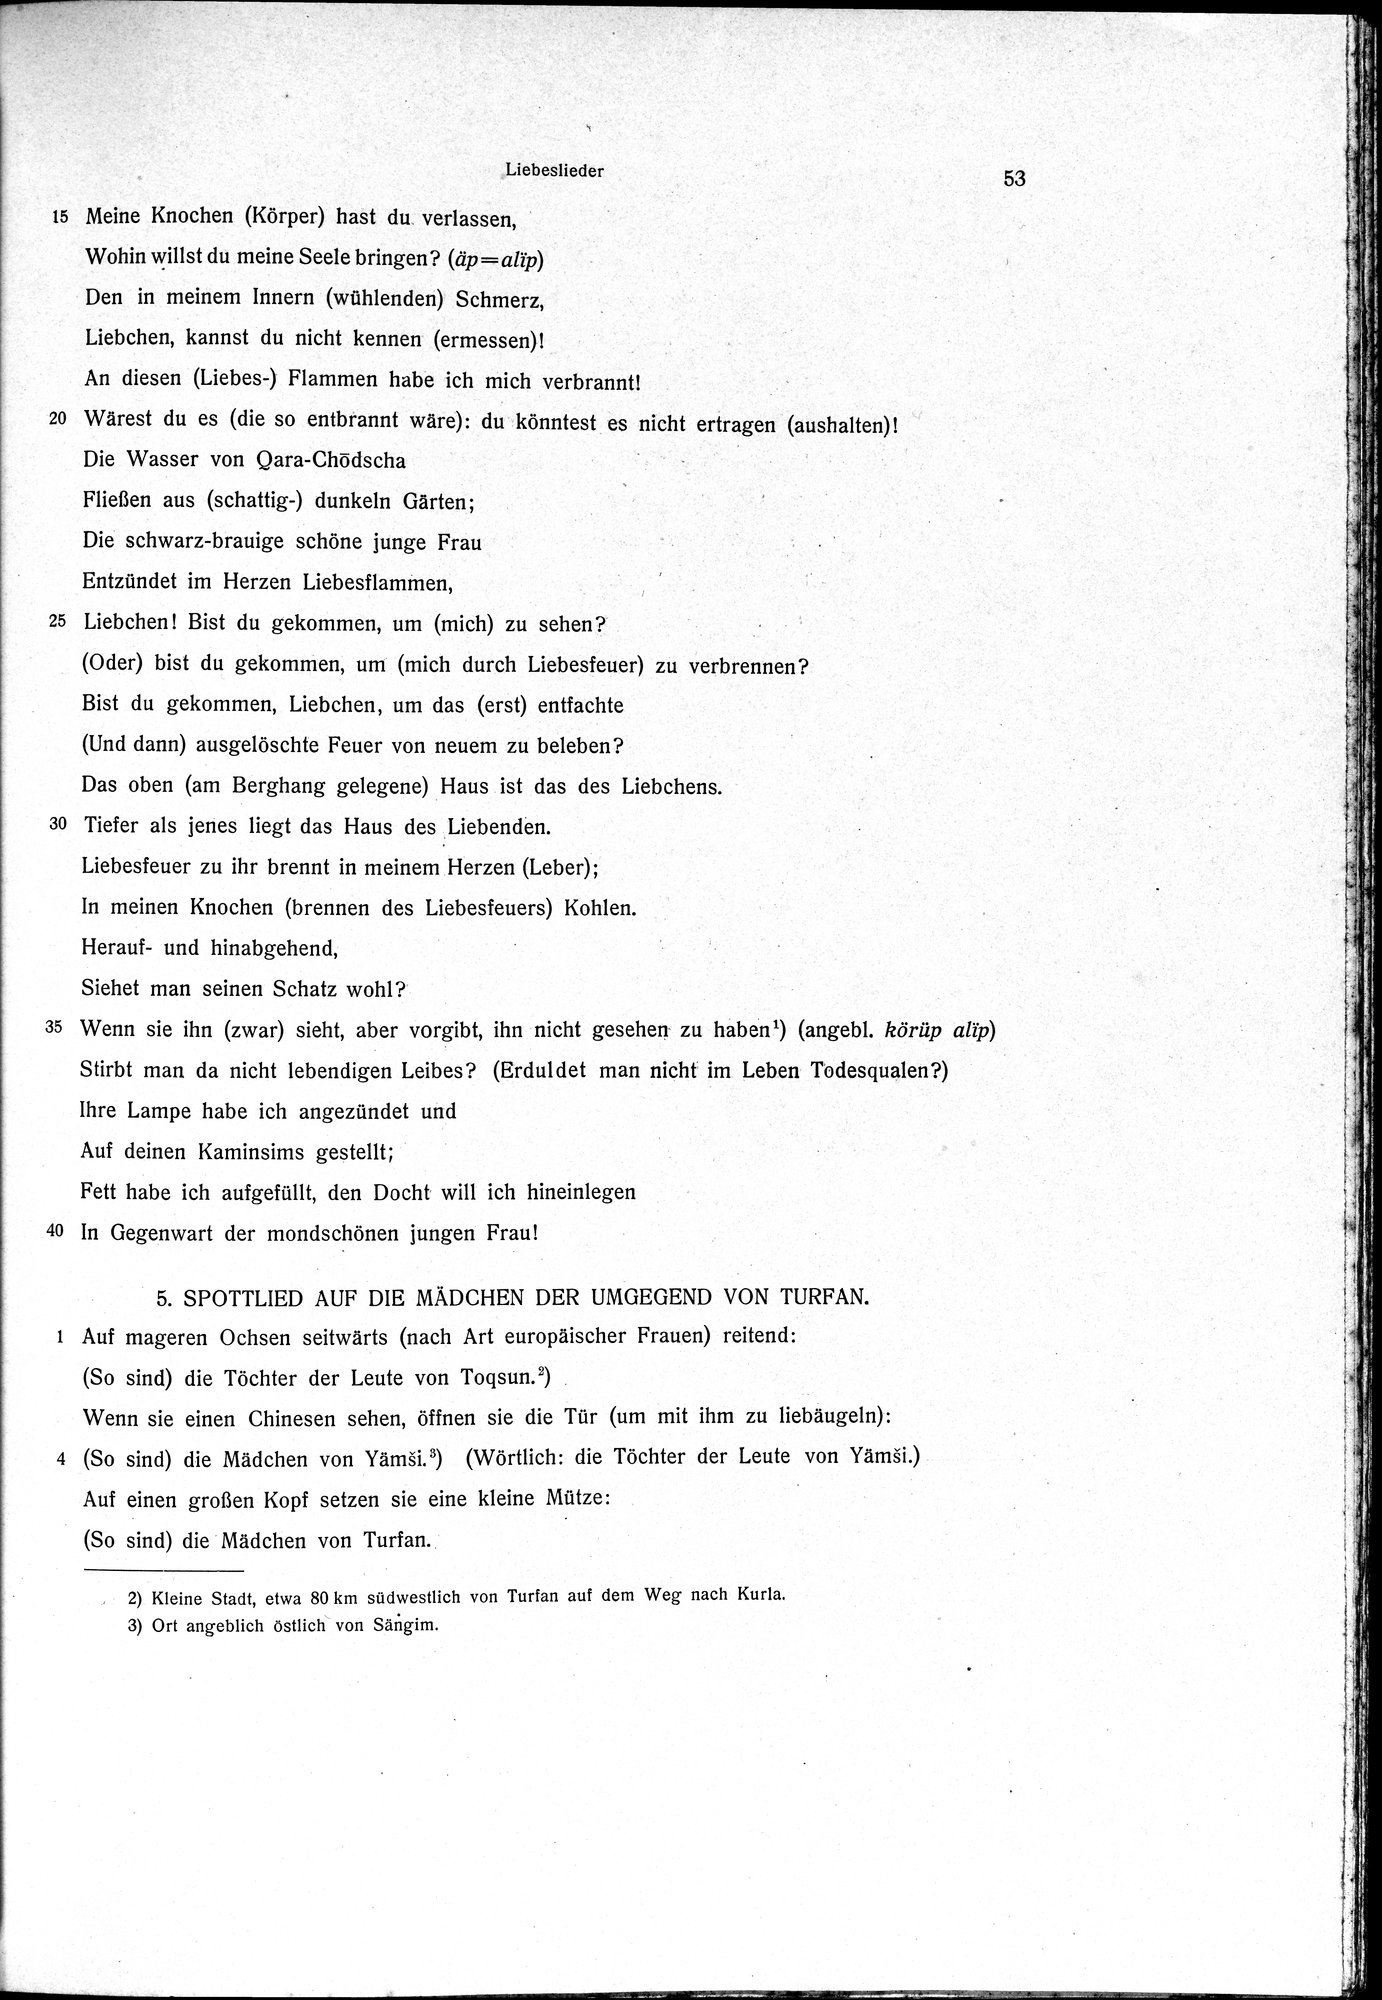 Sprichwörter und Lieder aus der Gegend von Turfan : vol.1 / Page 65 (Grayscale High Resolution Image)